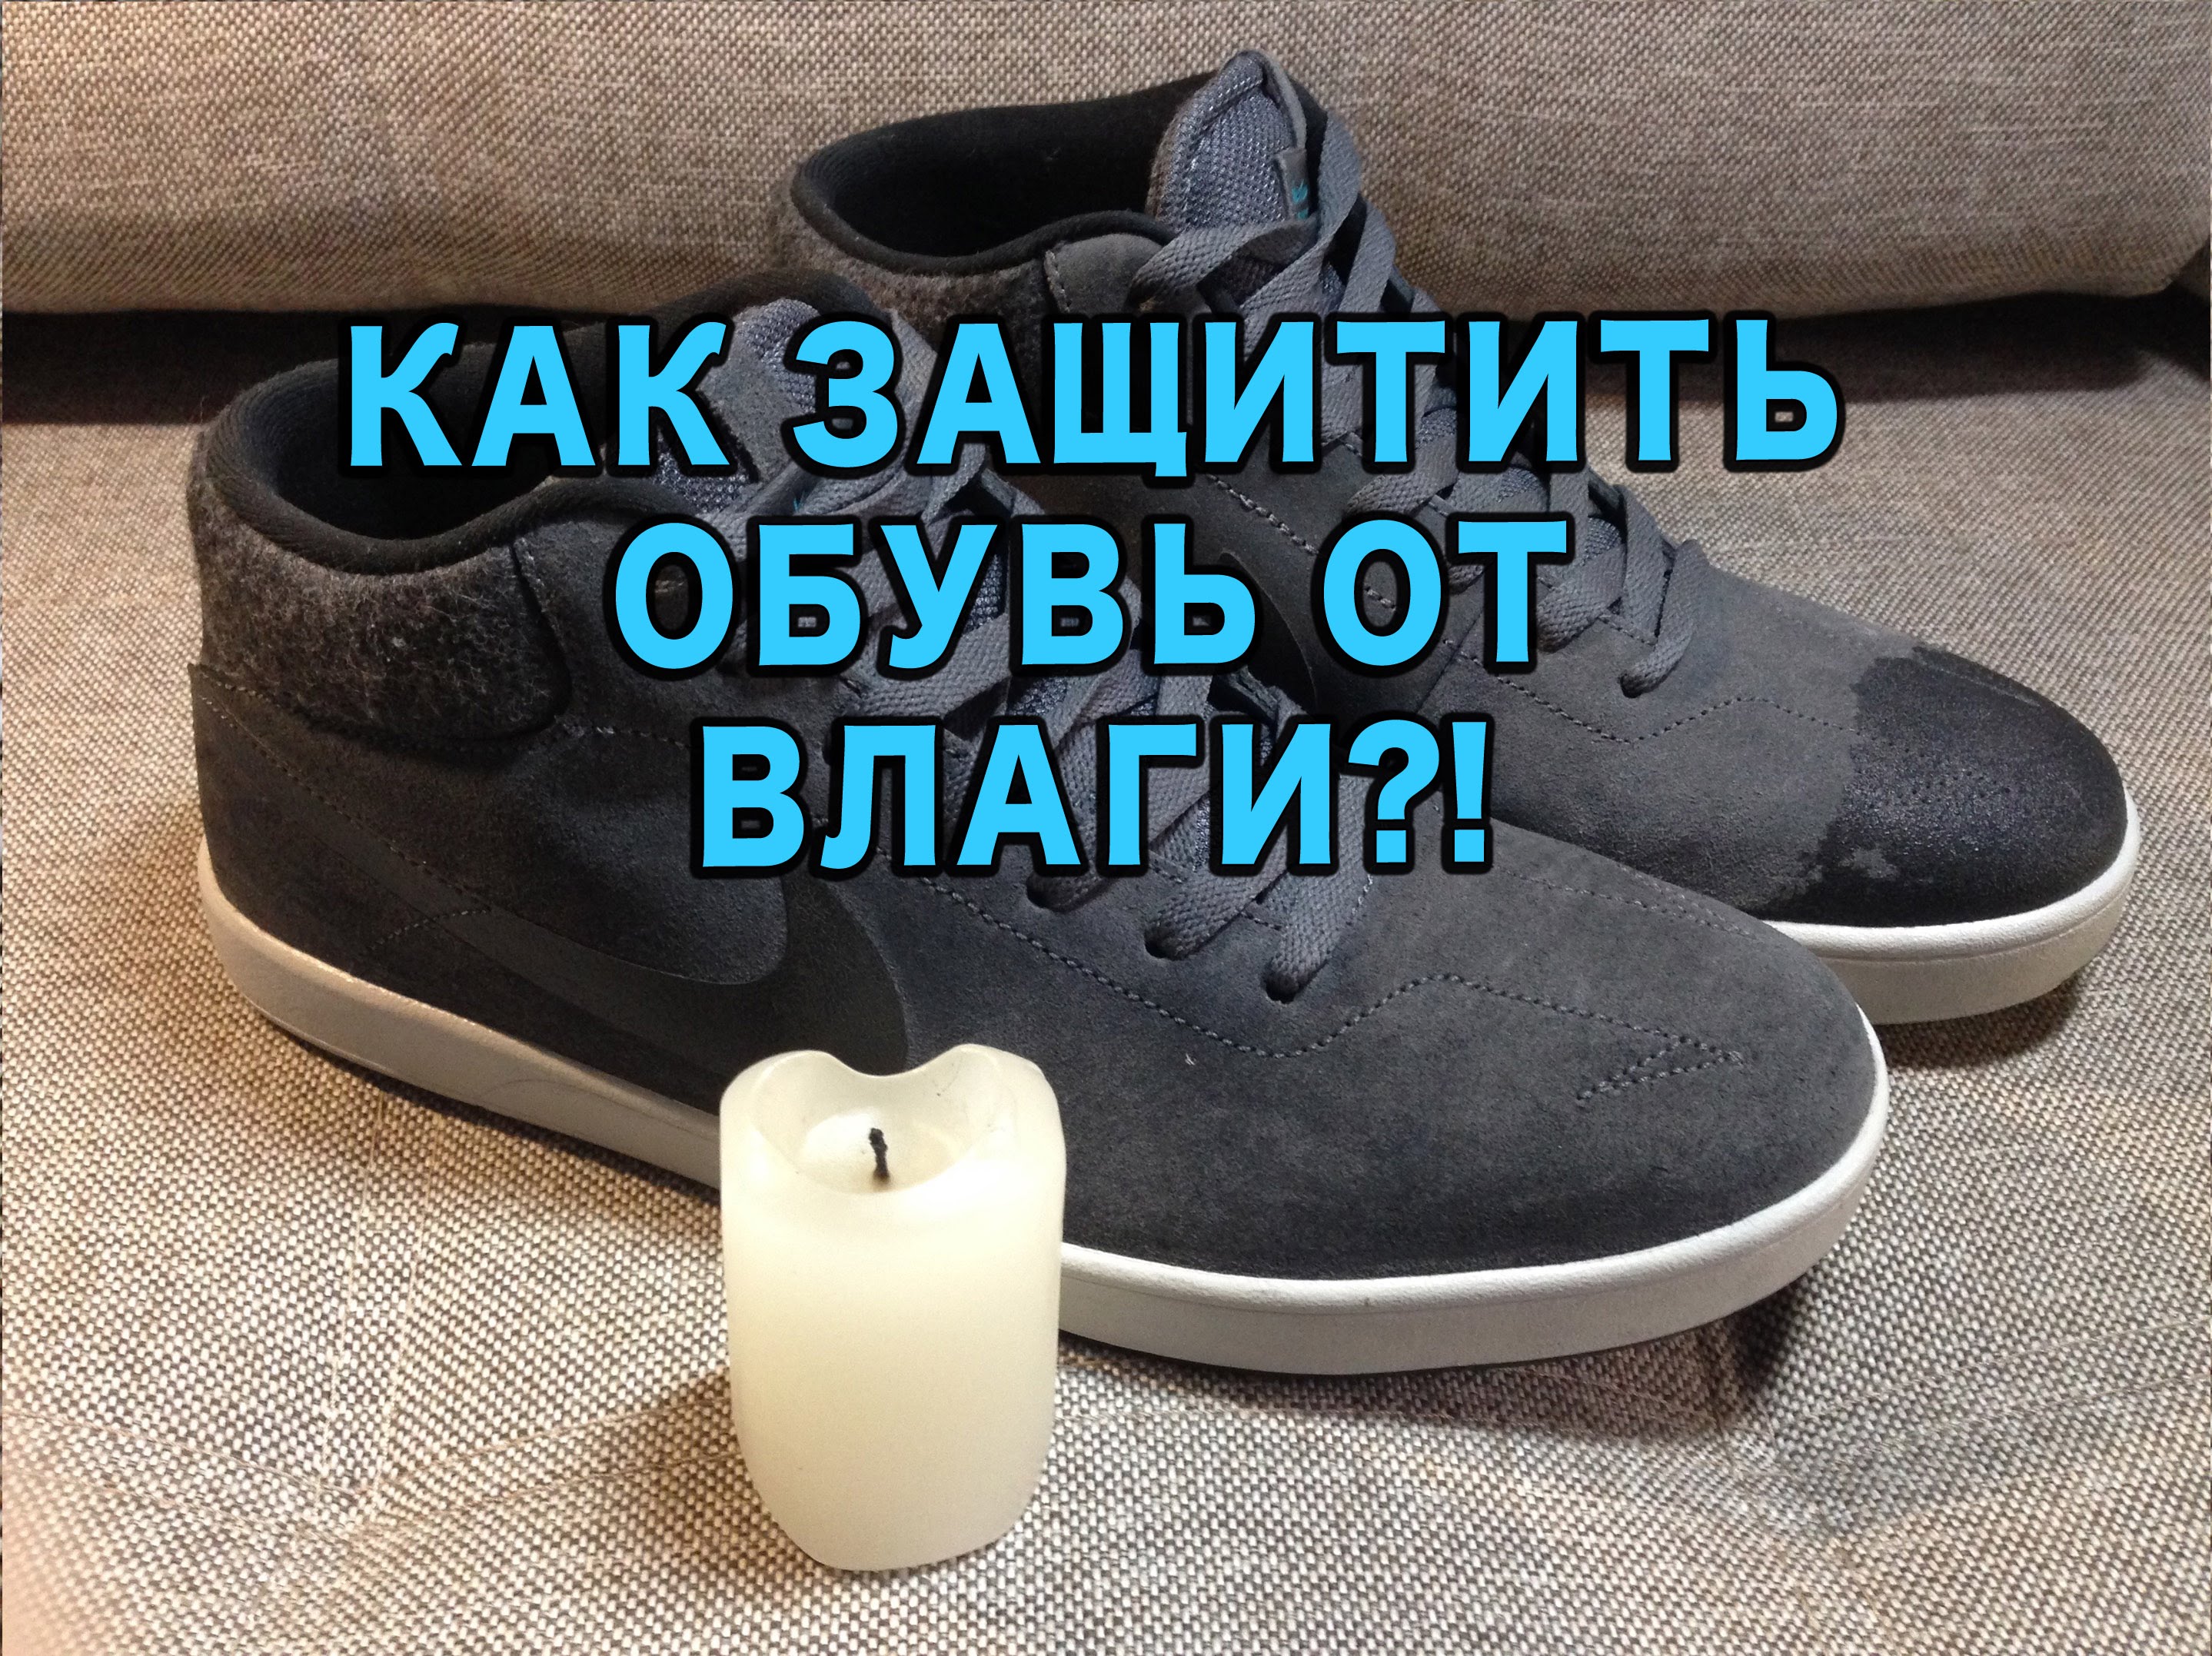 Чем обработать обувь, чтобы не промокала: домашние средства - Uborka.co